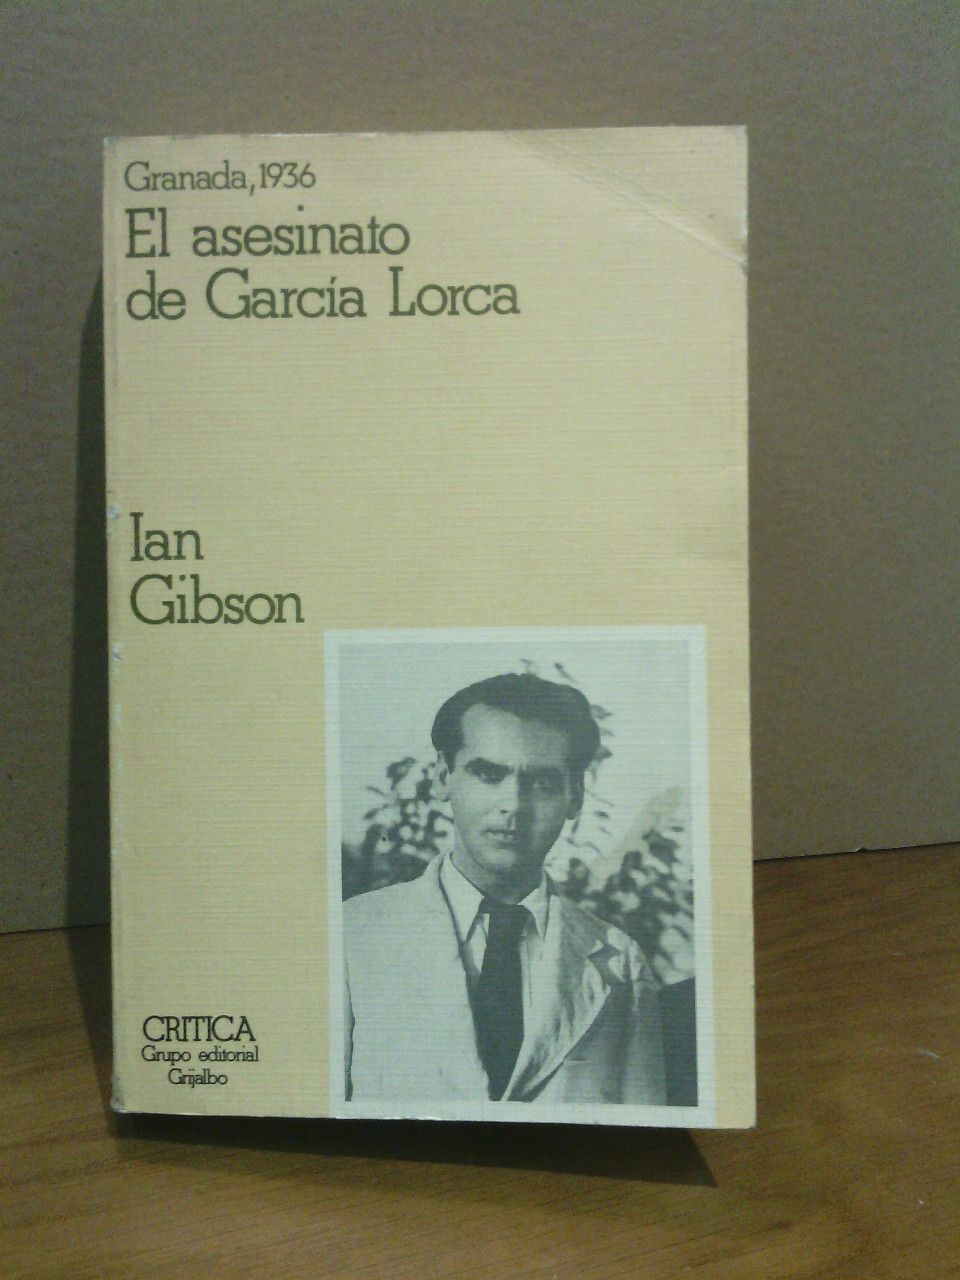 GIBSON, Ian - Granada en 1936 y el asesinato de Federico Garca Lorca